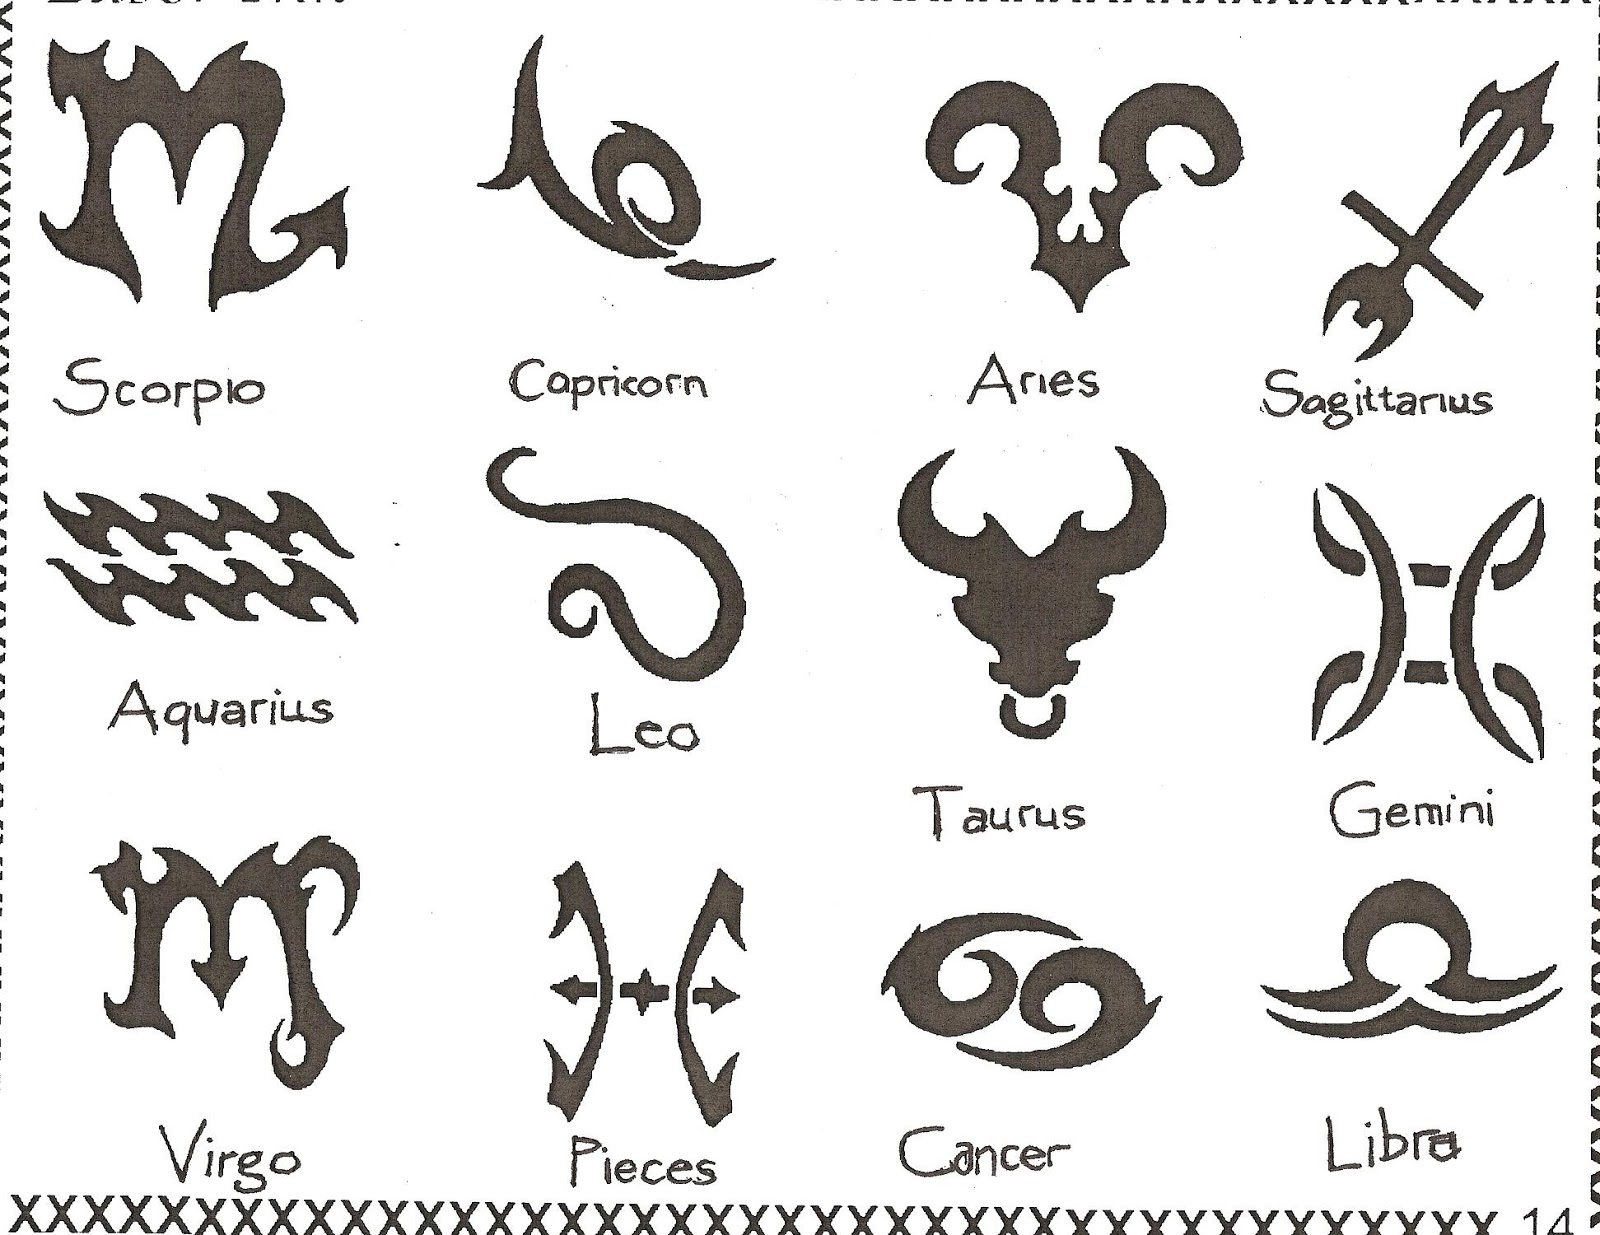 4. Free Tattoo Designs - Tribal, Zodiac, Cross, Star Tattoos ... - wide 2